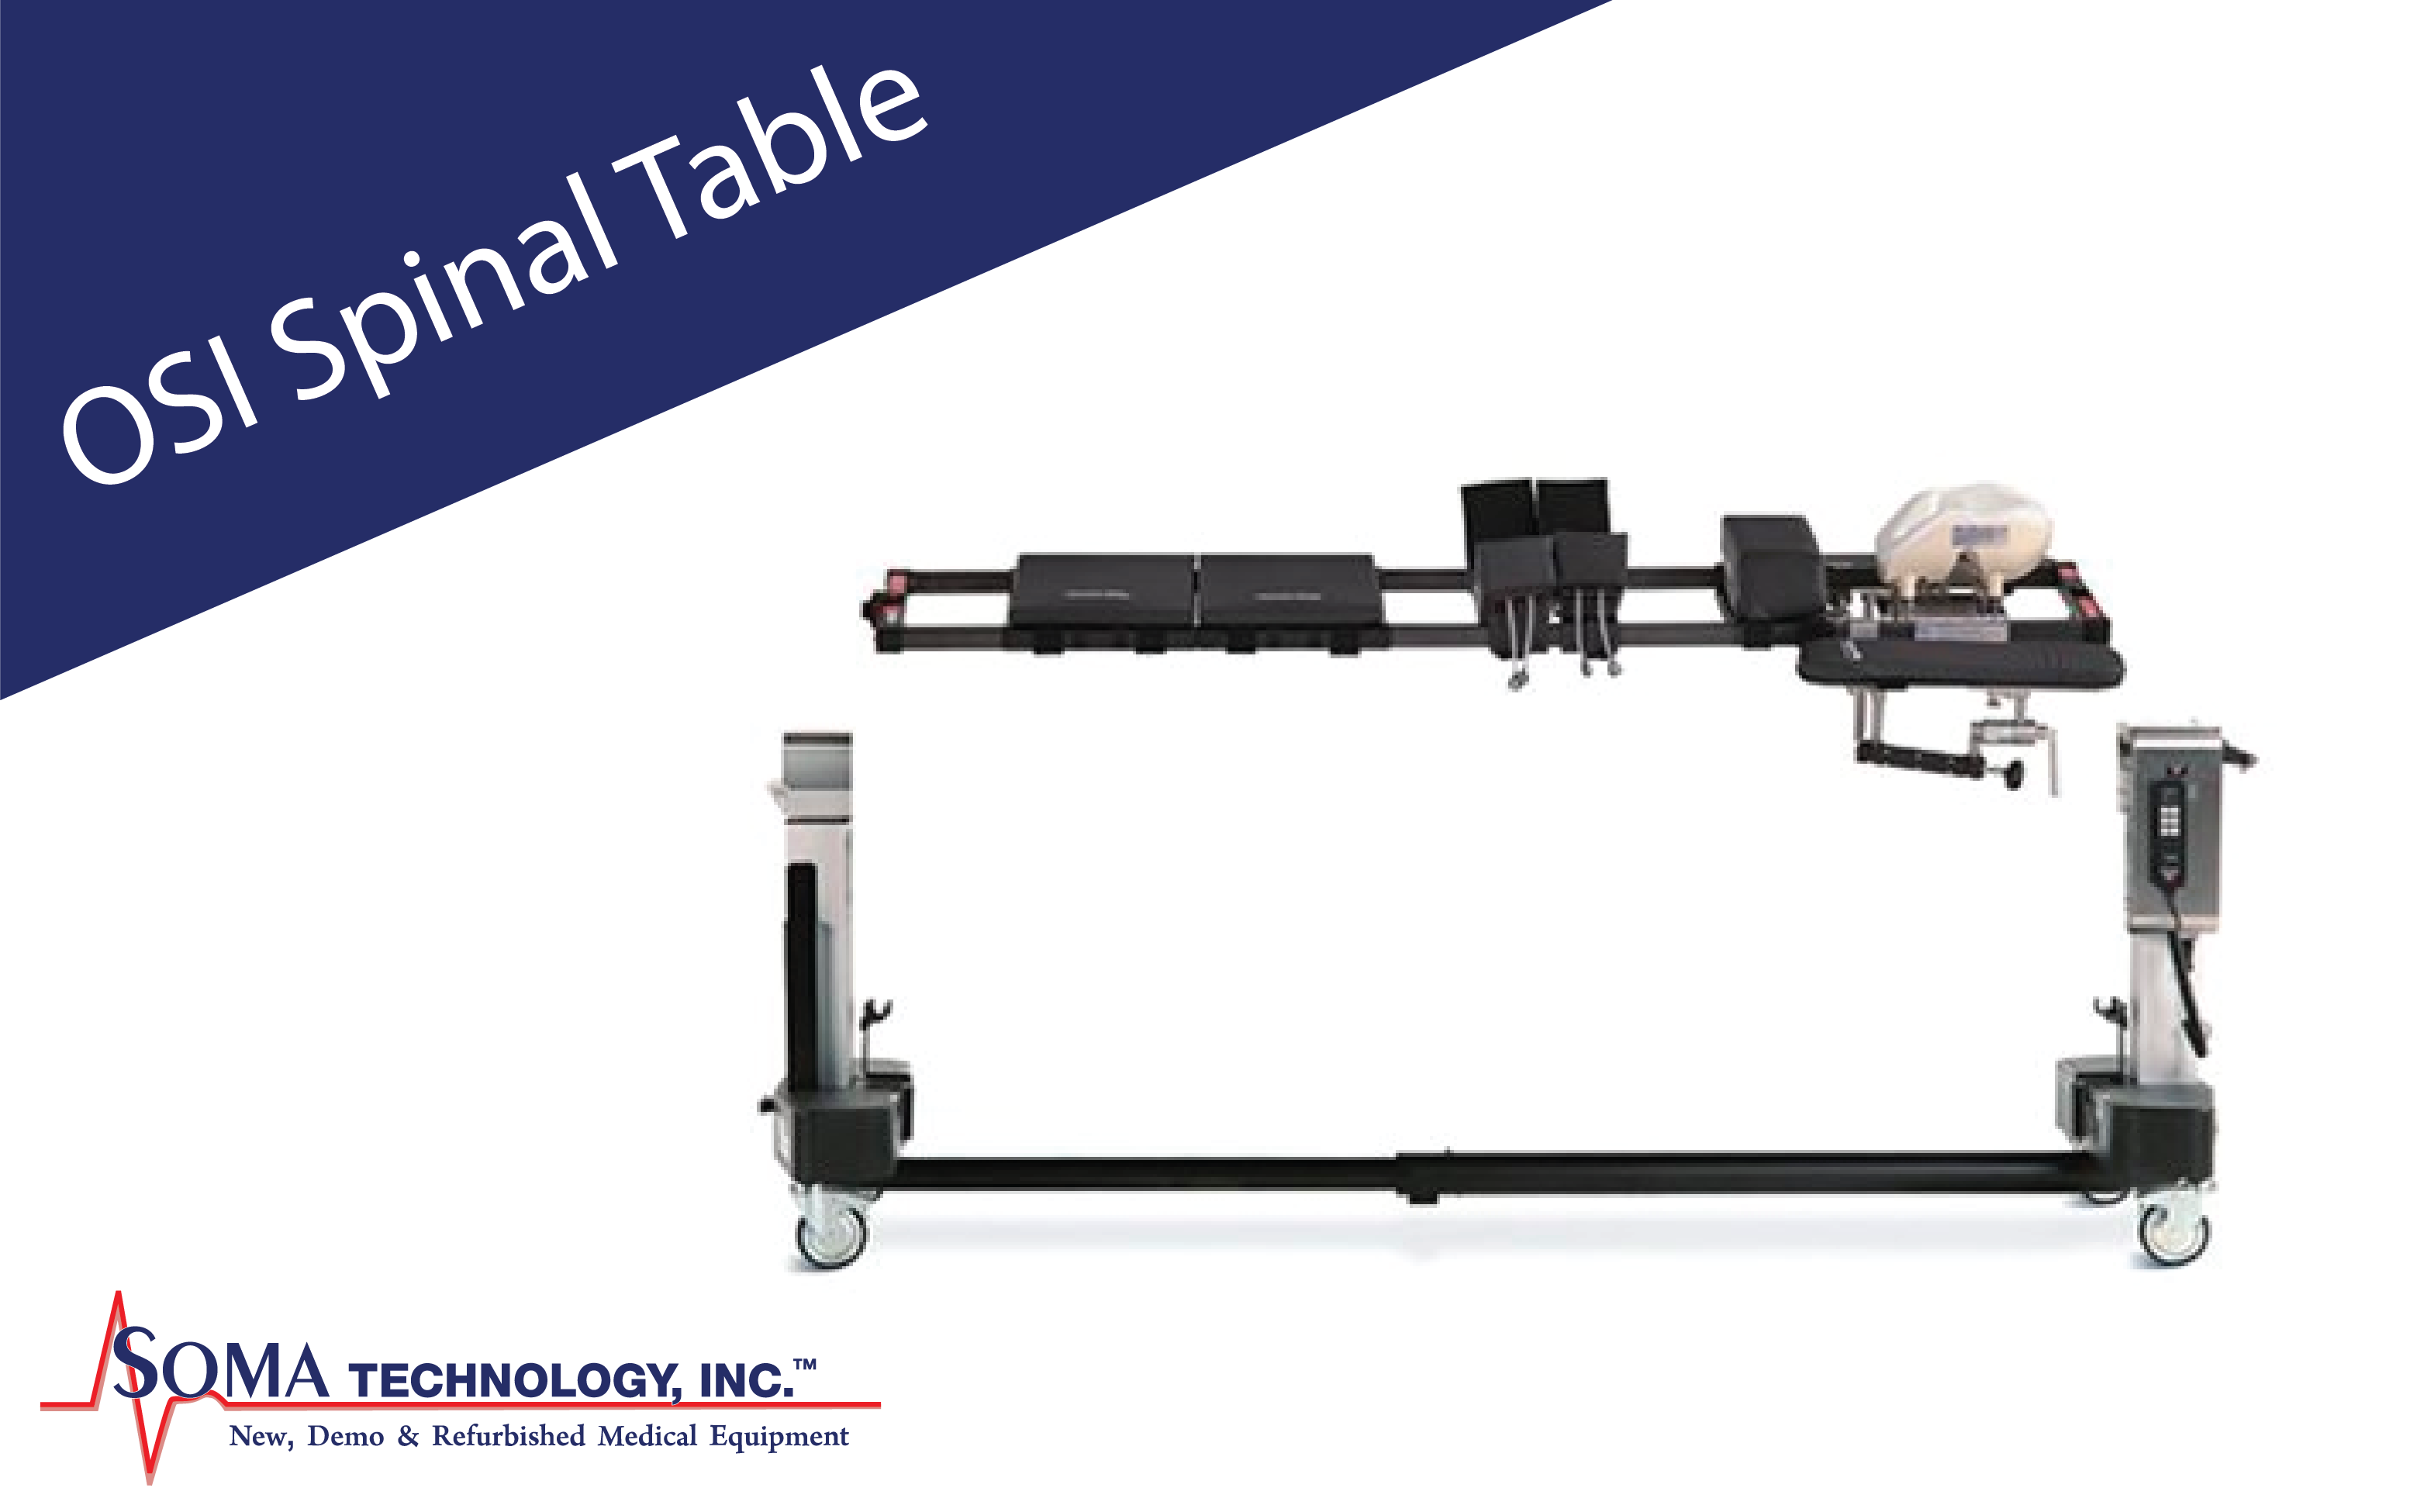 OSI Spinal Table - Jackson Table - Soma Technology, Inc.